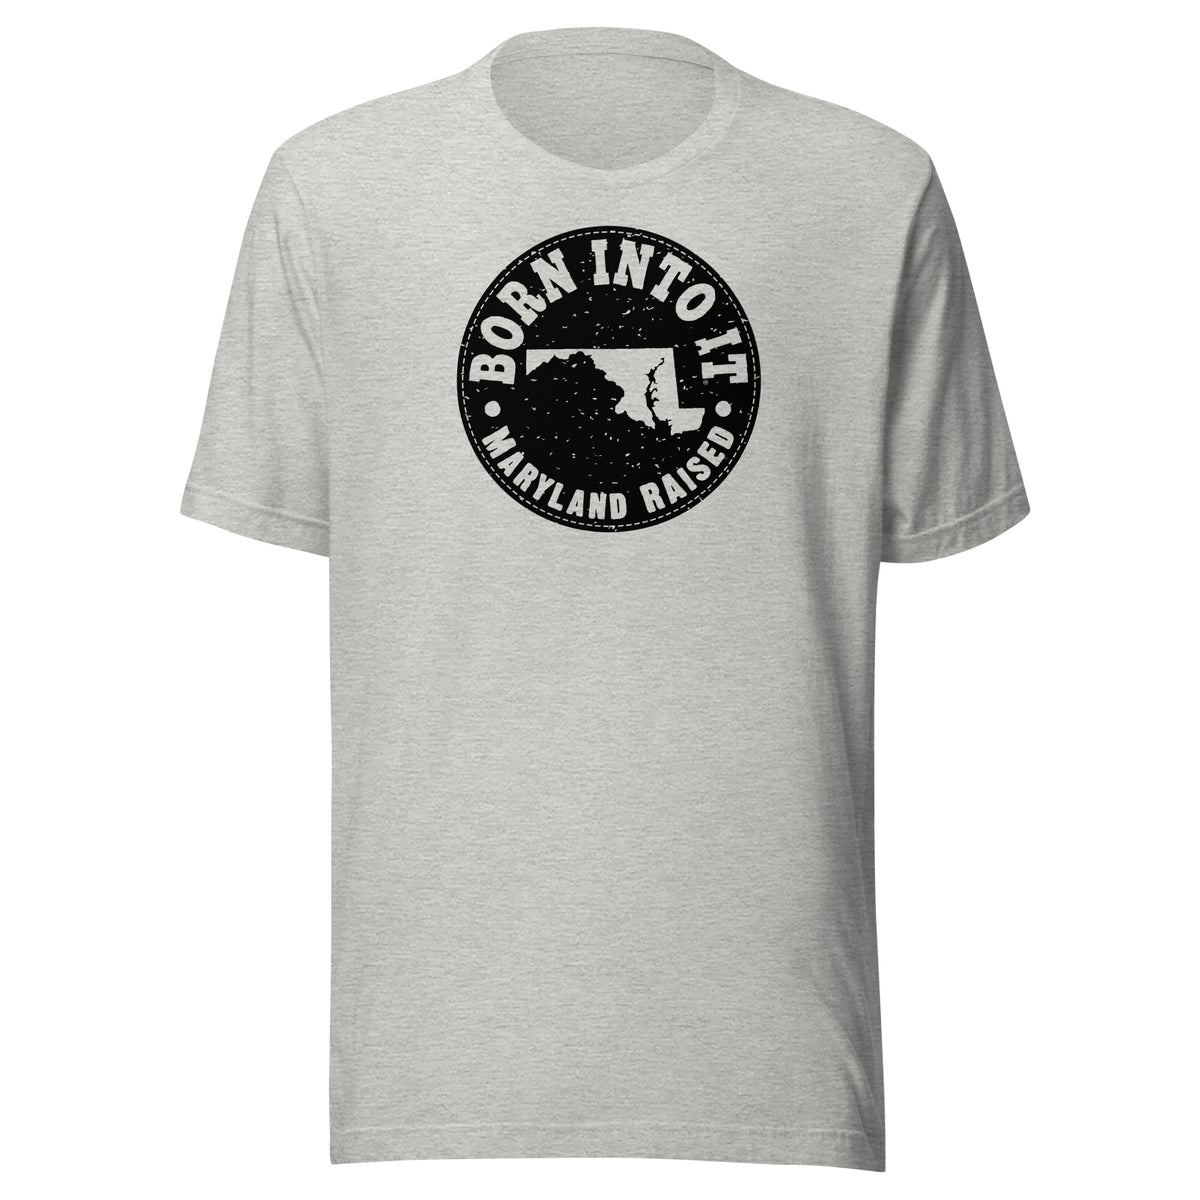 Maryland Raised Unisex T-Shirt